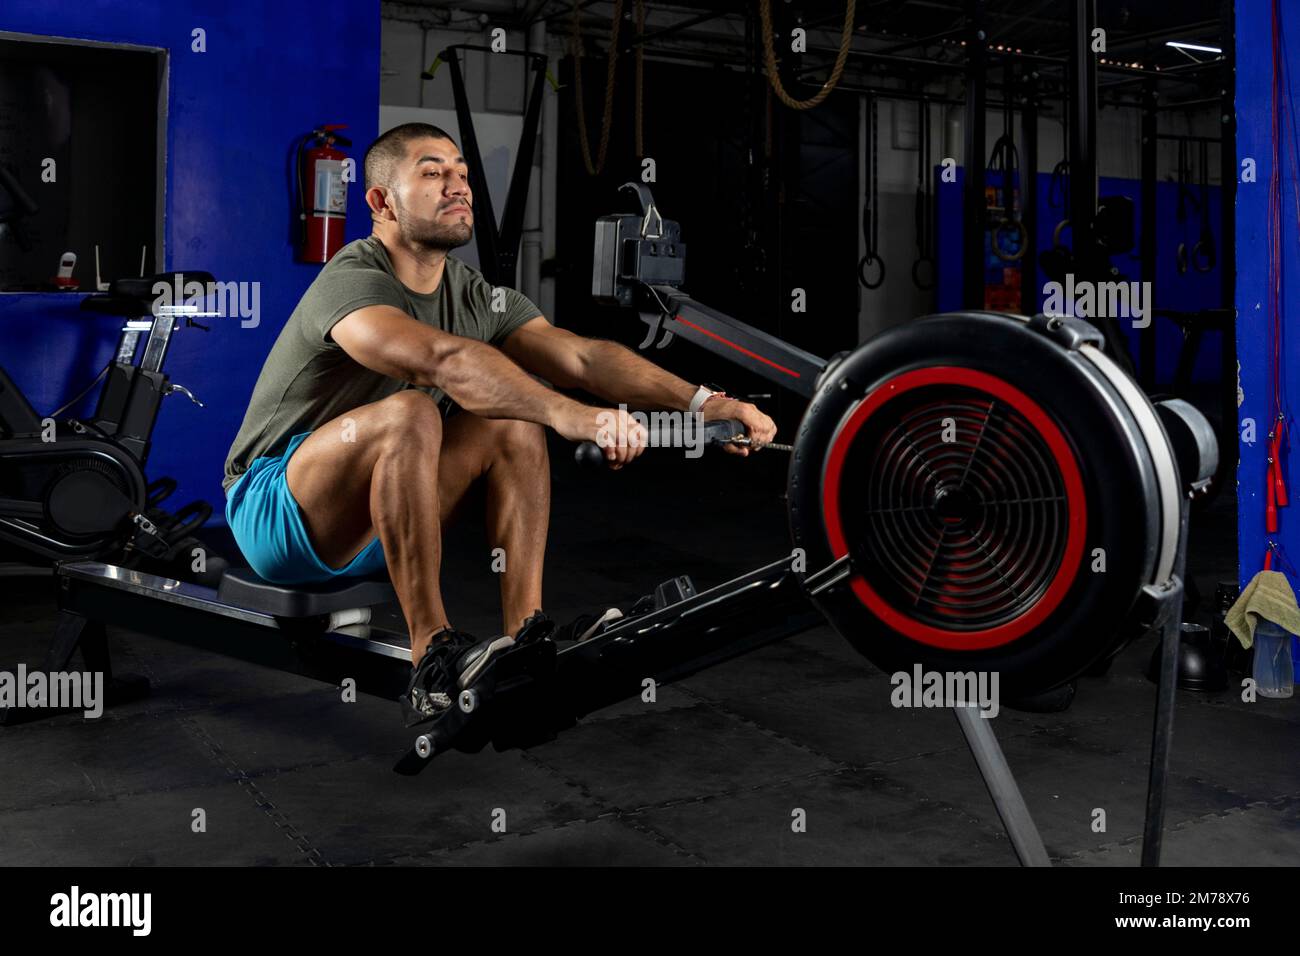 Seitenansicht eines Lateiners mit Sportbekleidung, der in einem Crossfit-Fitnessstudio auf einer Maschine rudert Stockfoto